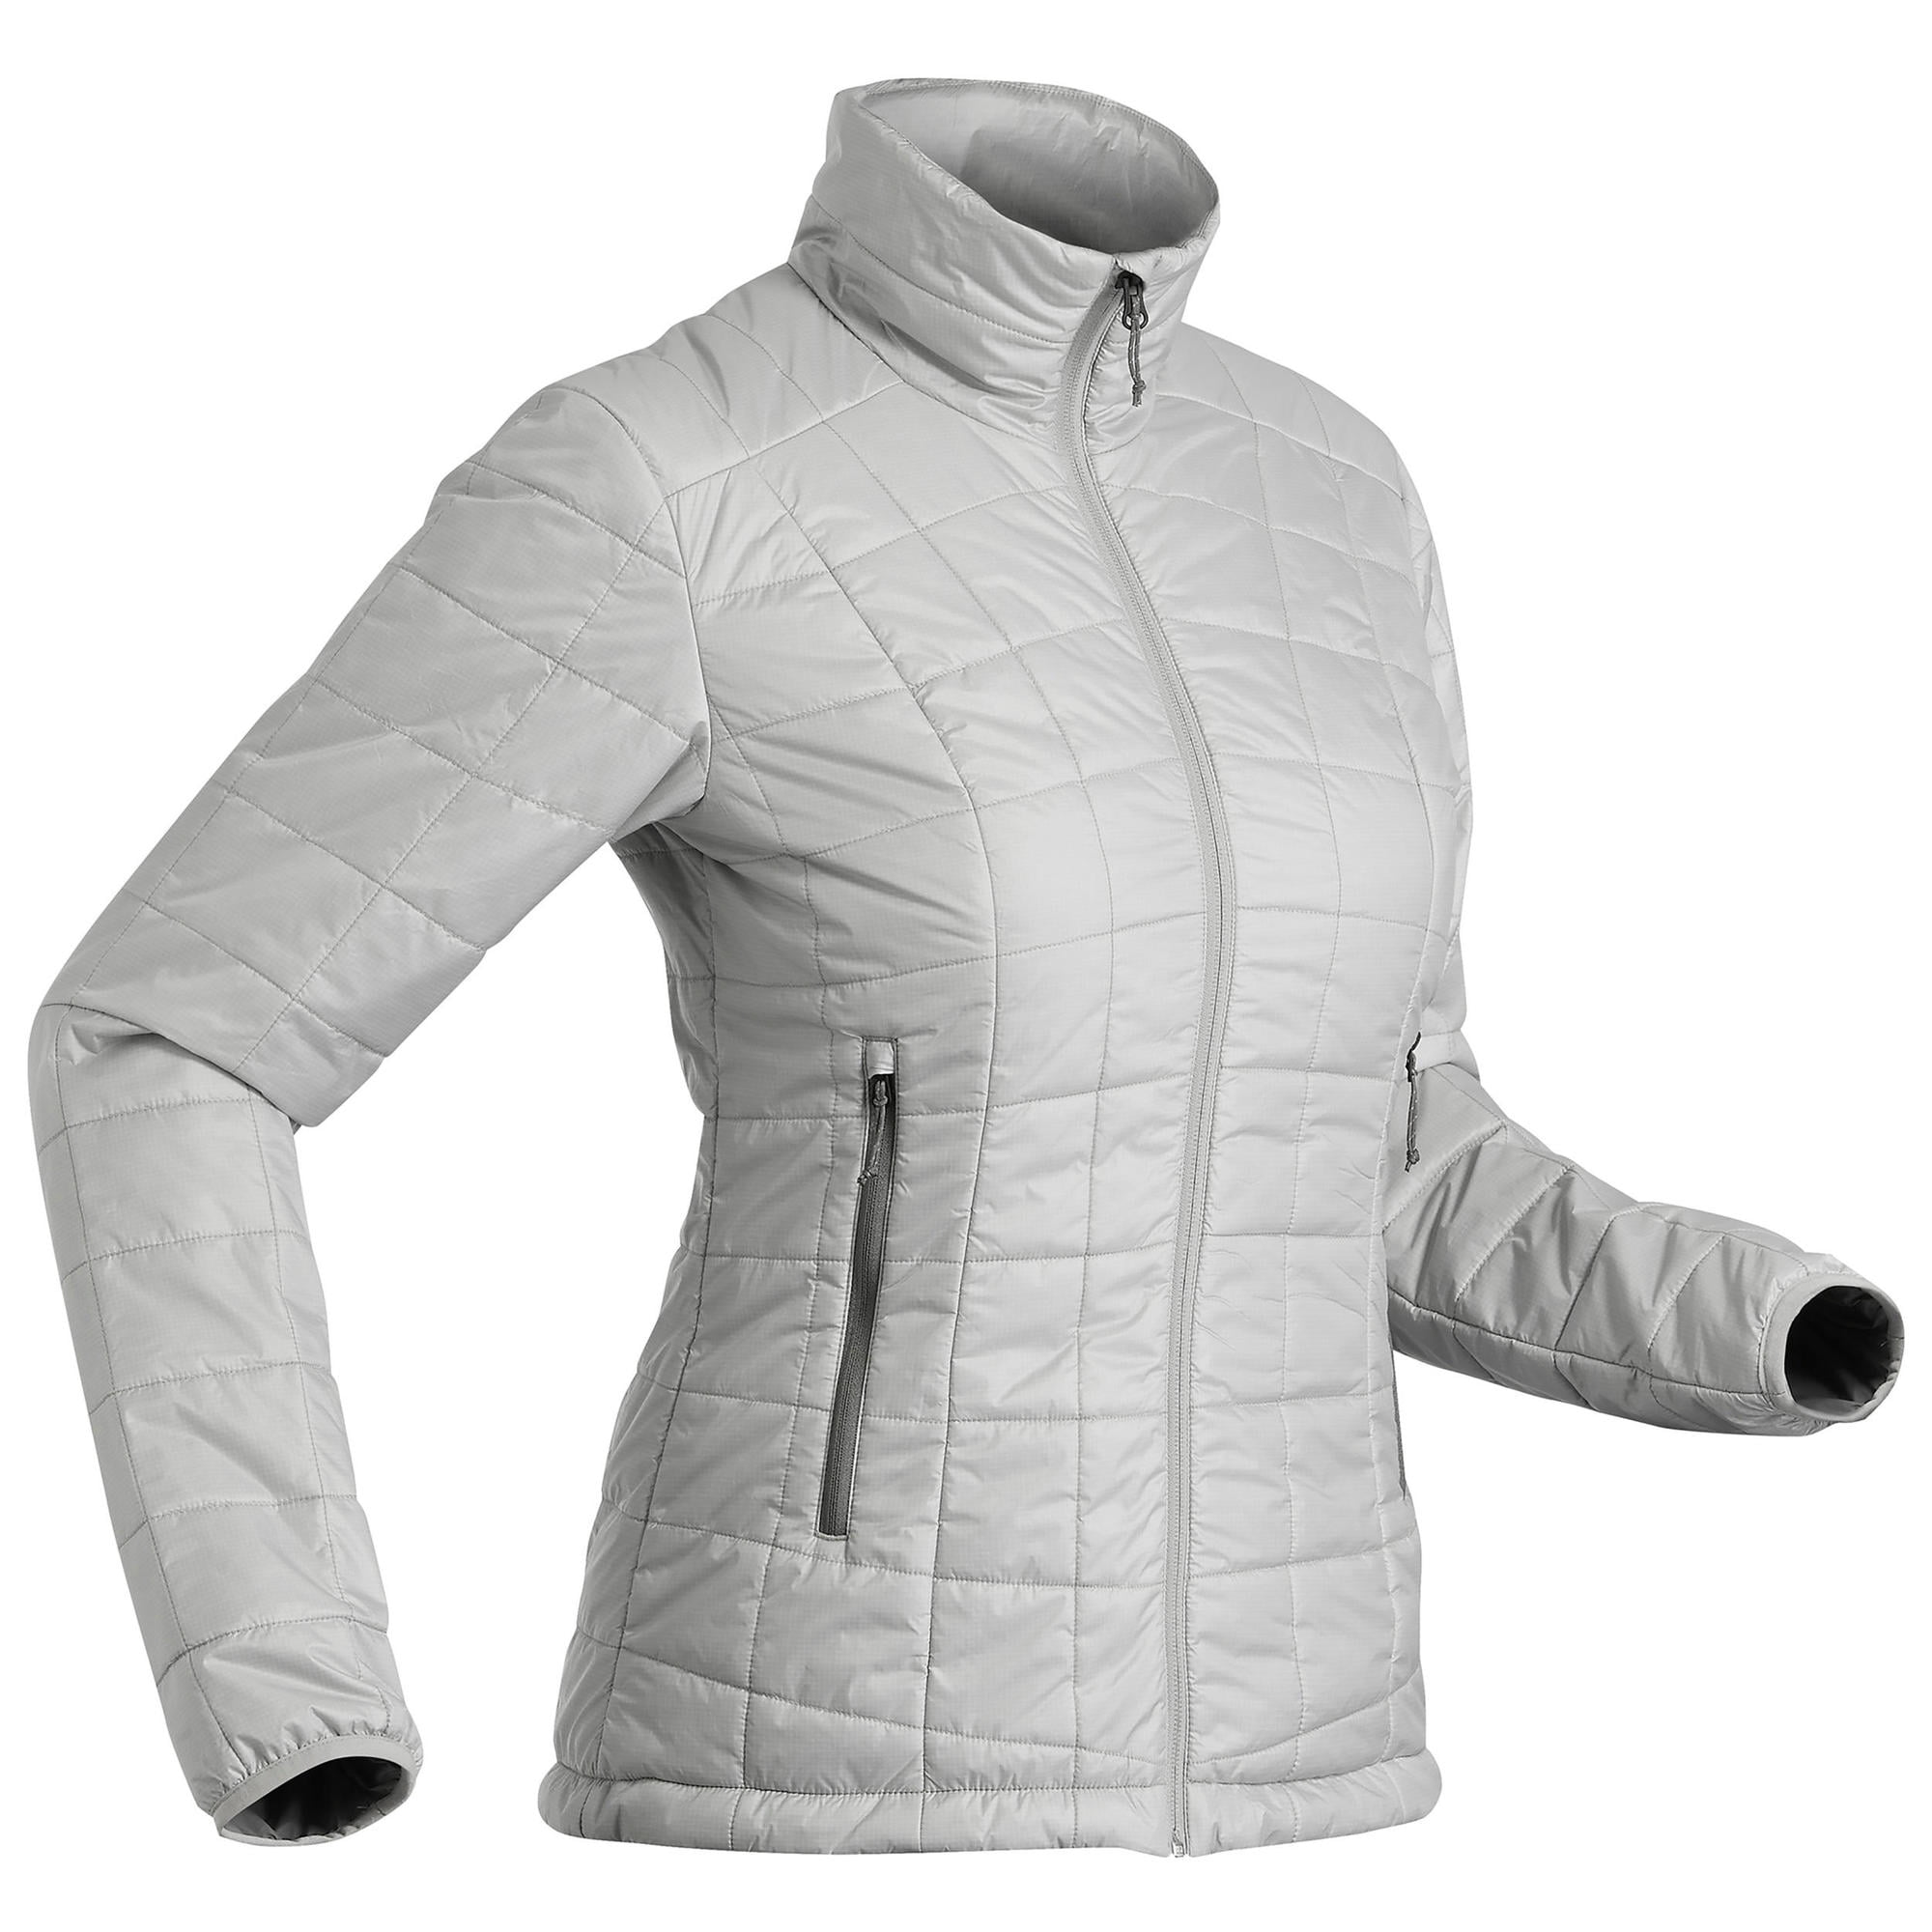 decathlon forclaz jacket